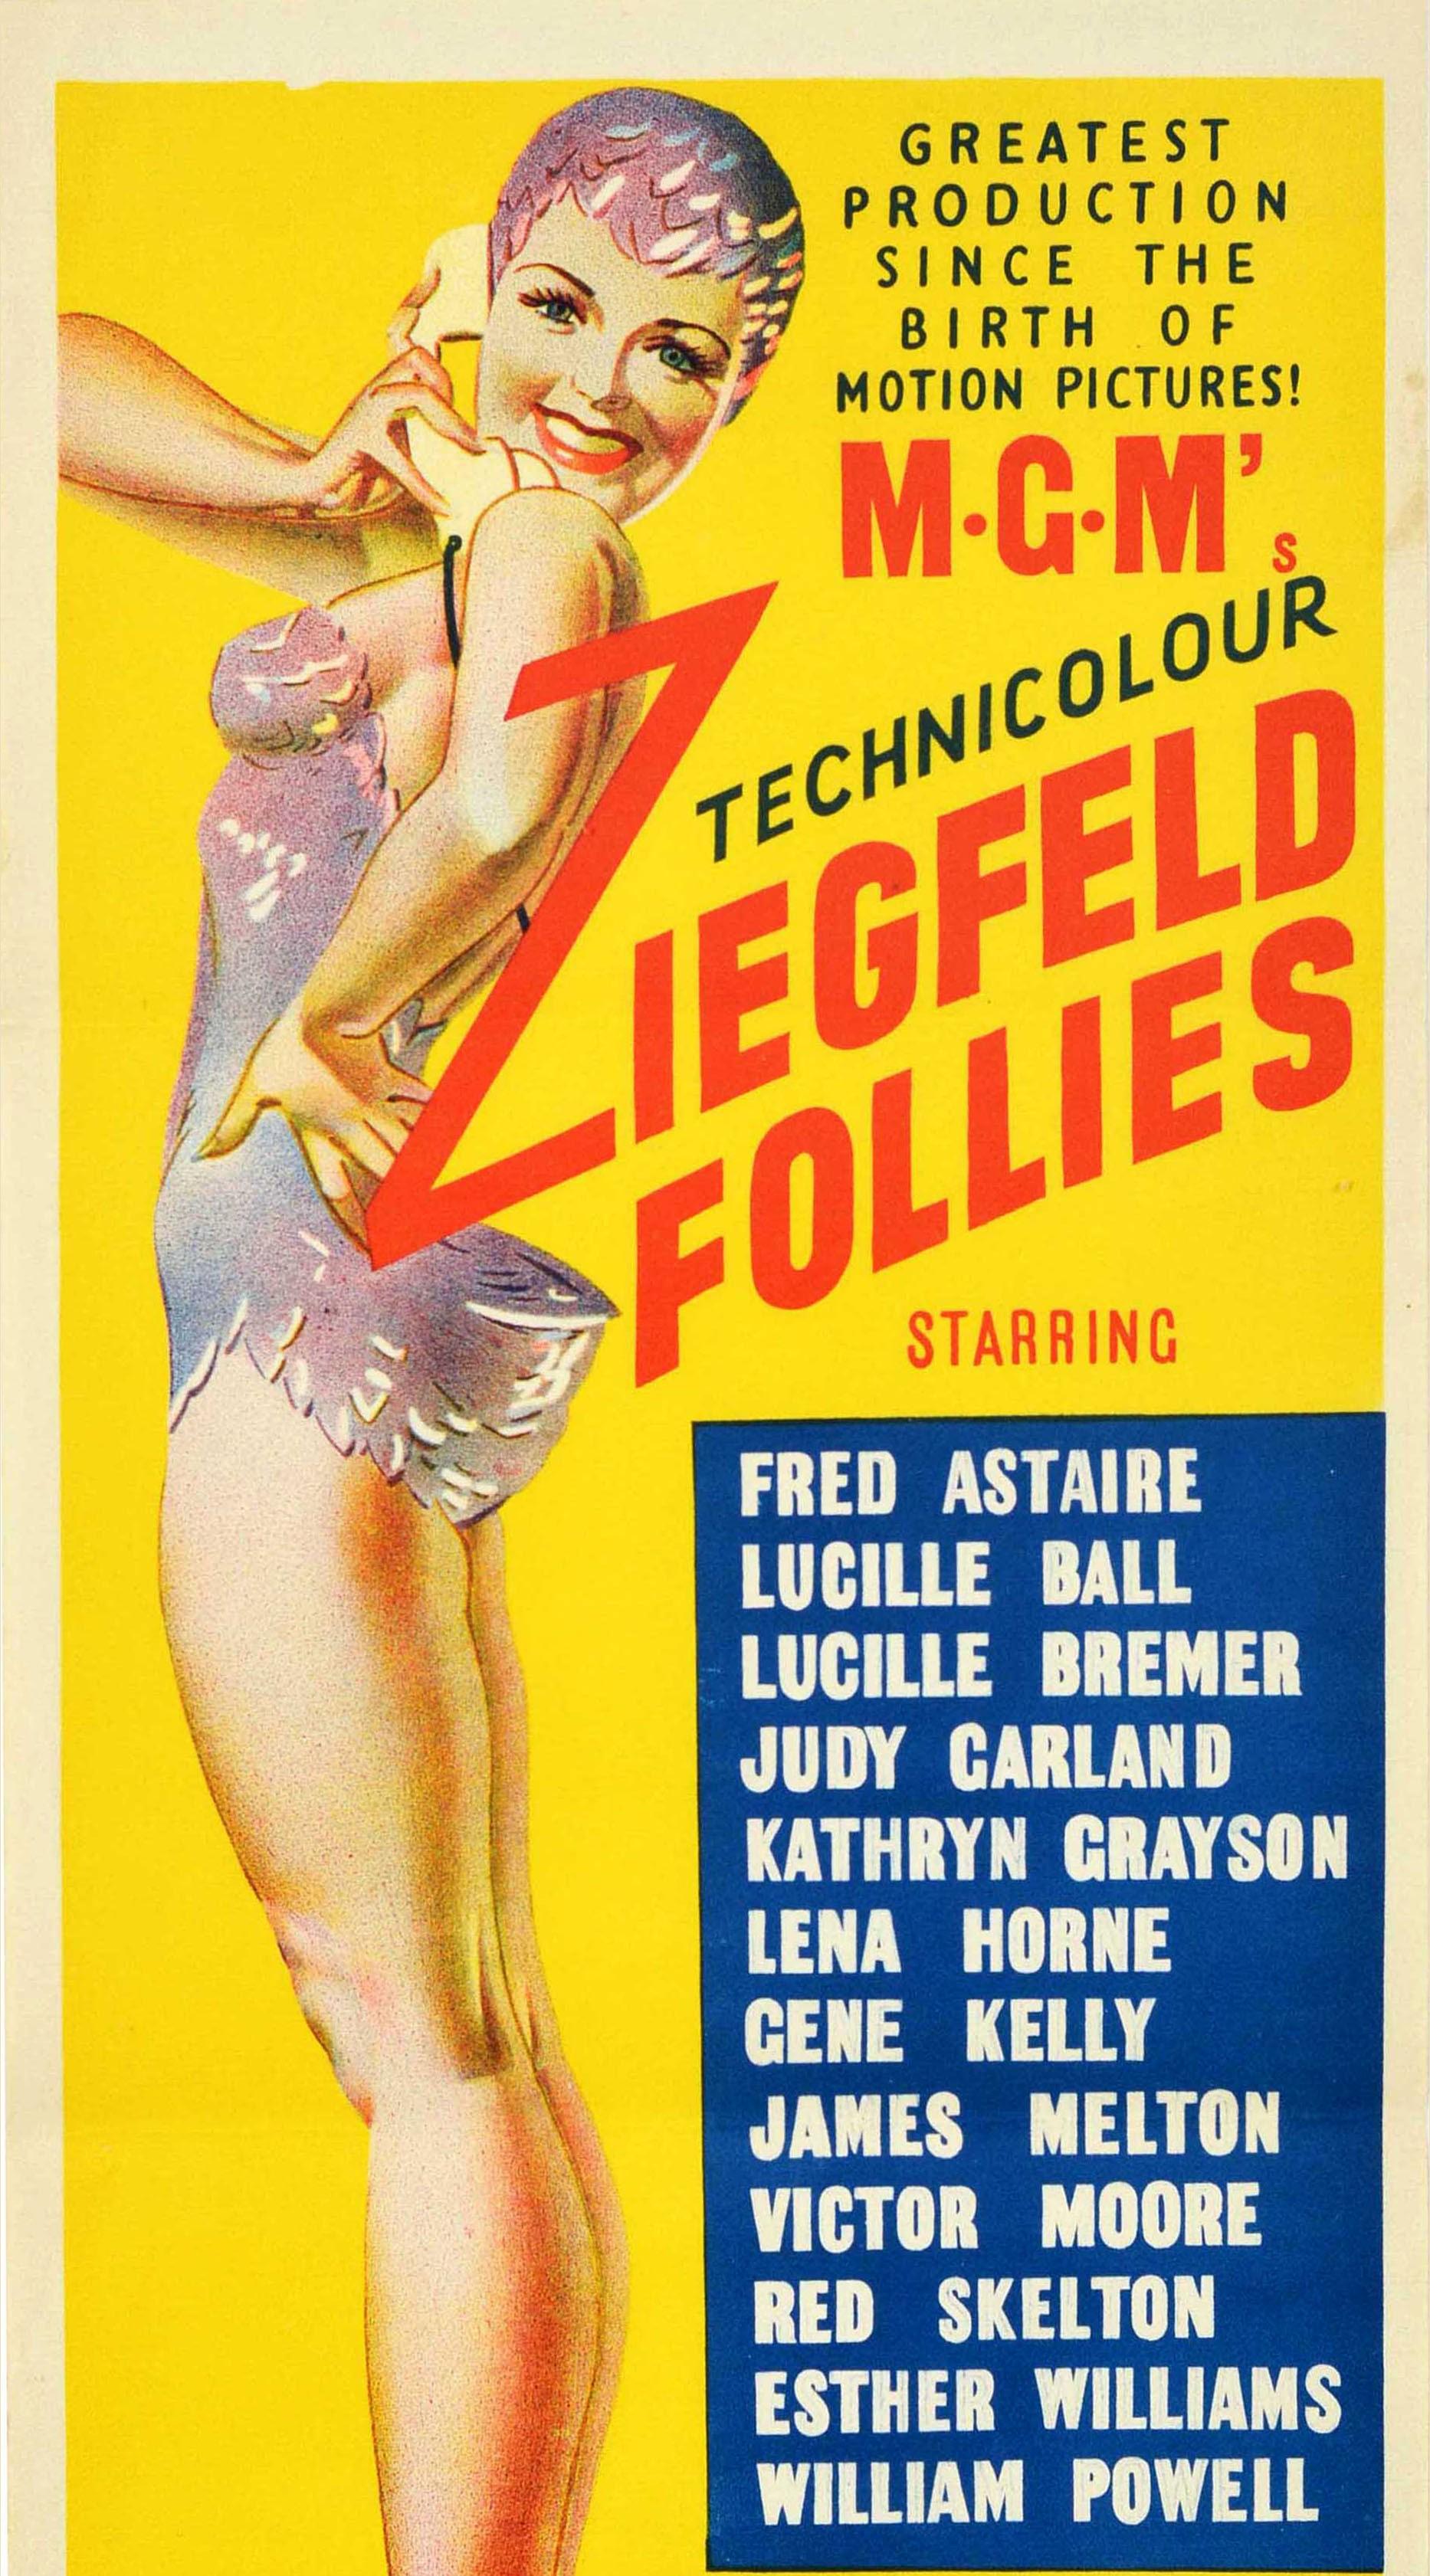 Affiche originale d'époque pour un film MGM en Technicolor - Ziegfeld Follies - la plus grande production depuis la naissance du cinéma ! avec une distribution de stars comprenant Fred Astaire, Judy Garland, Lucille Ball, Lucille Bremer, Gene Kelly